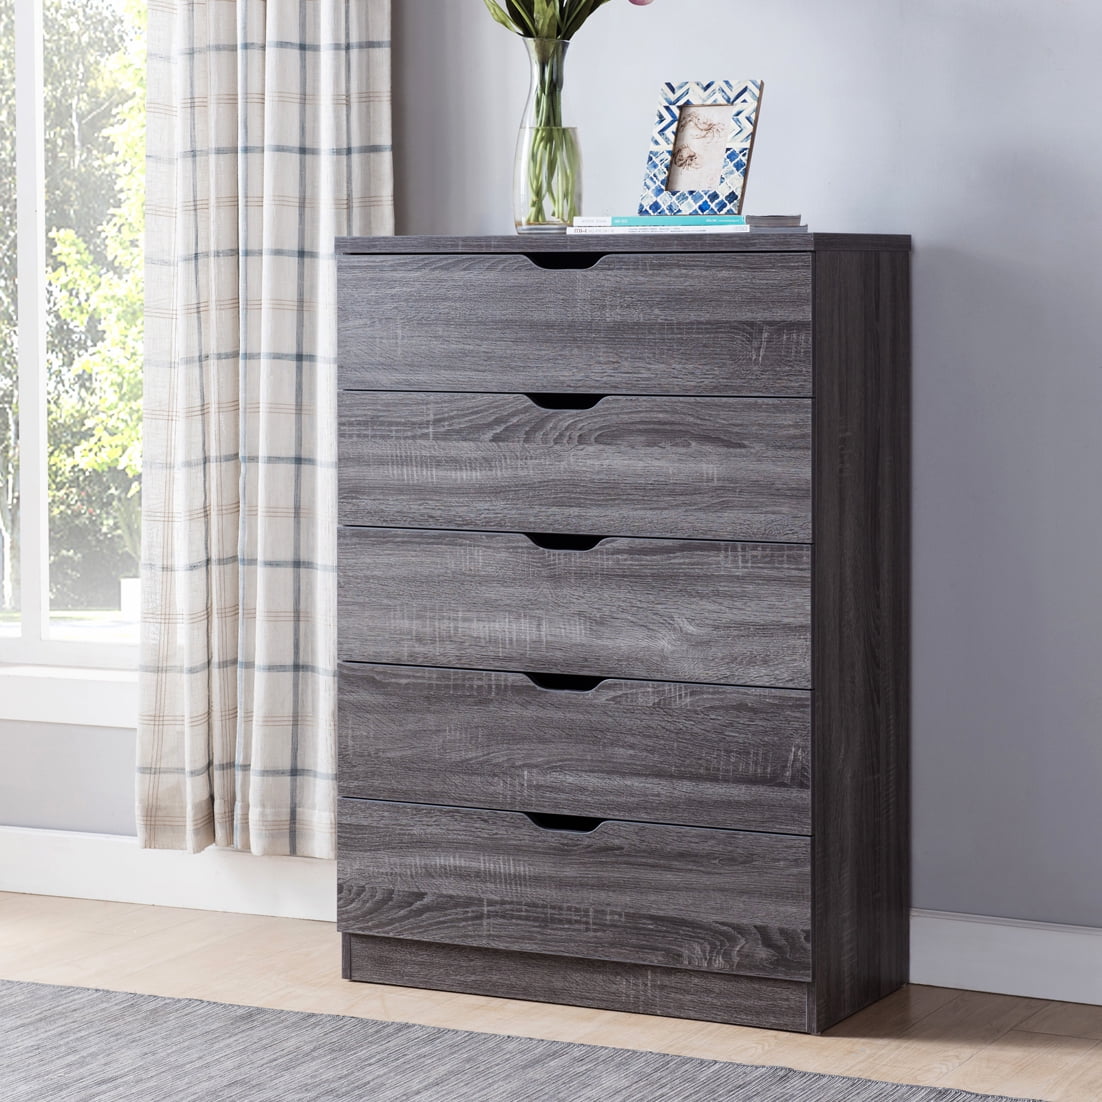 Smart Home Eltra K Series Utility Storage Organizer Wood 5 Drawer Chest Dresser 